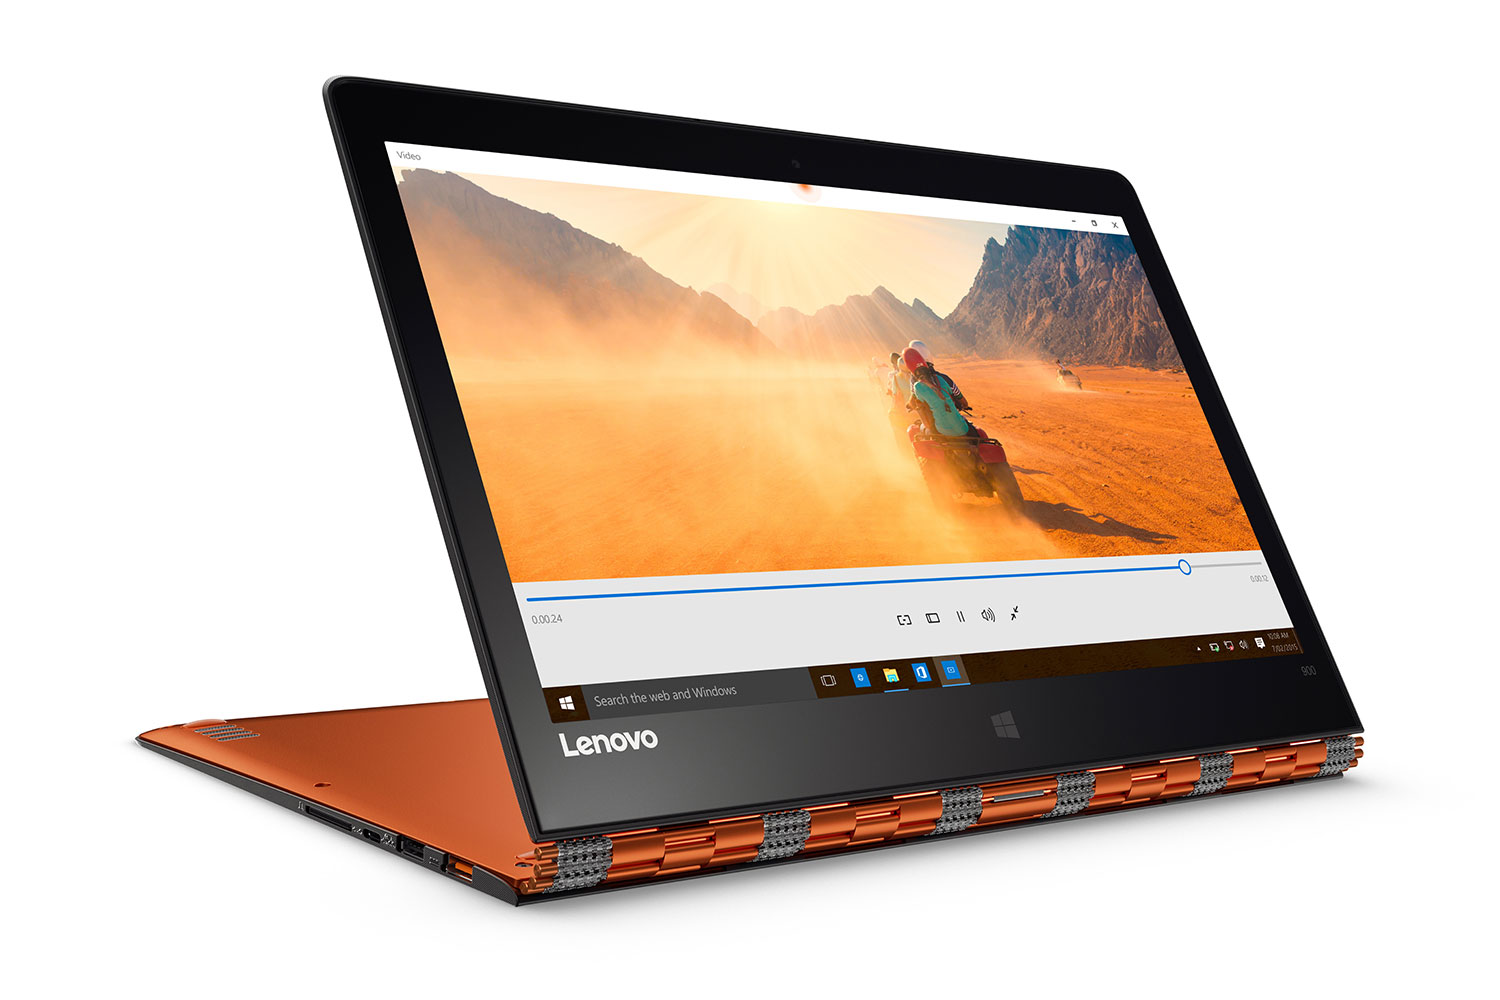 Lenovo Yoga 900 Business Edition